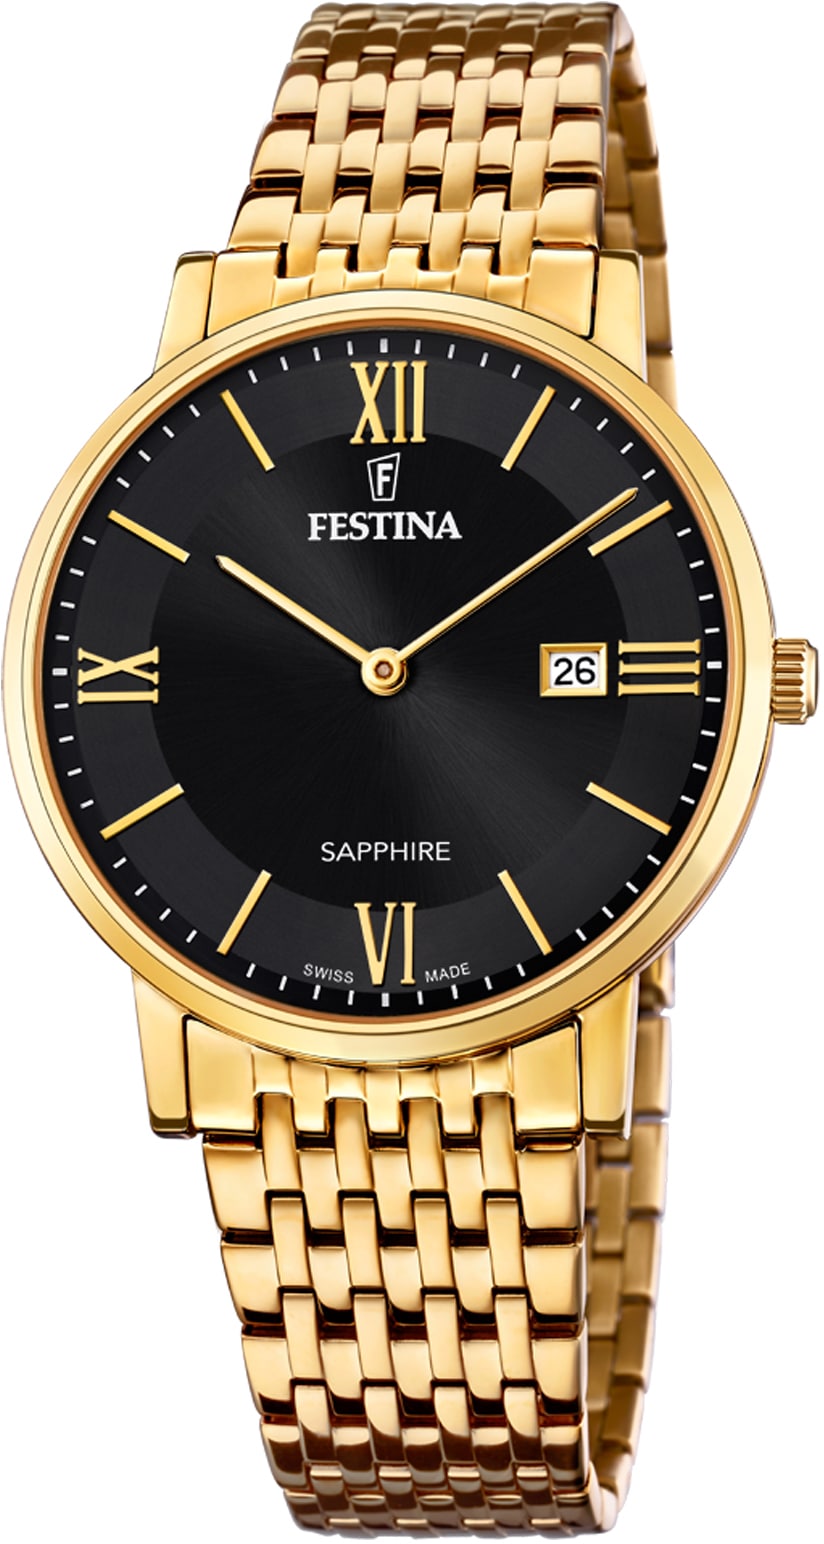 Festina Schweizer Uhr »Festina Swiss Made, F20020/3« online bestellen bei  OTTO